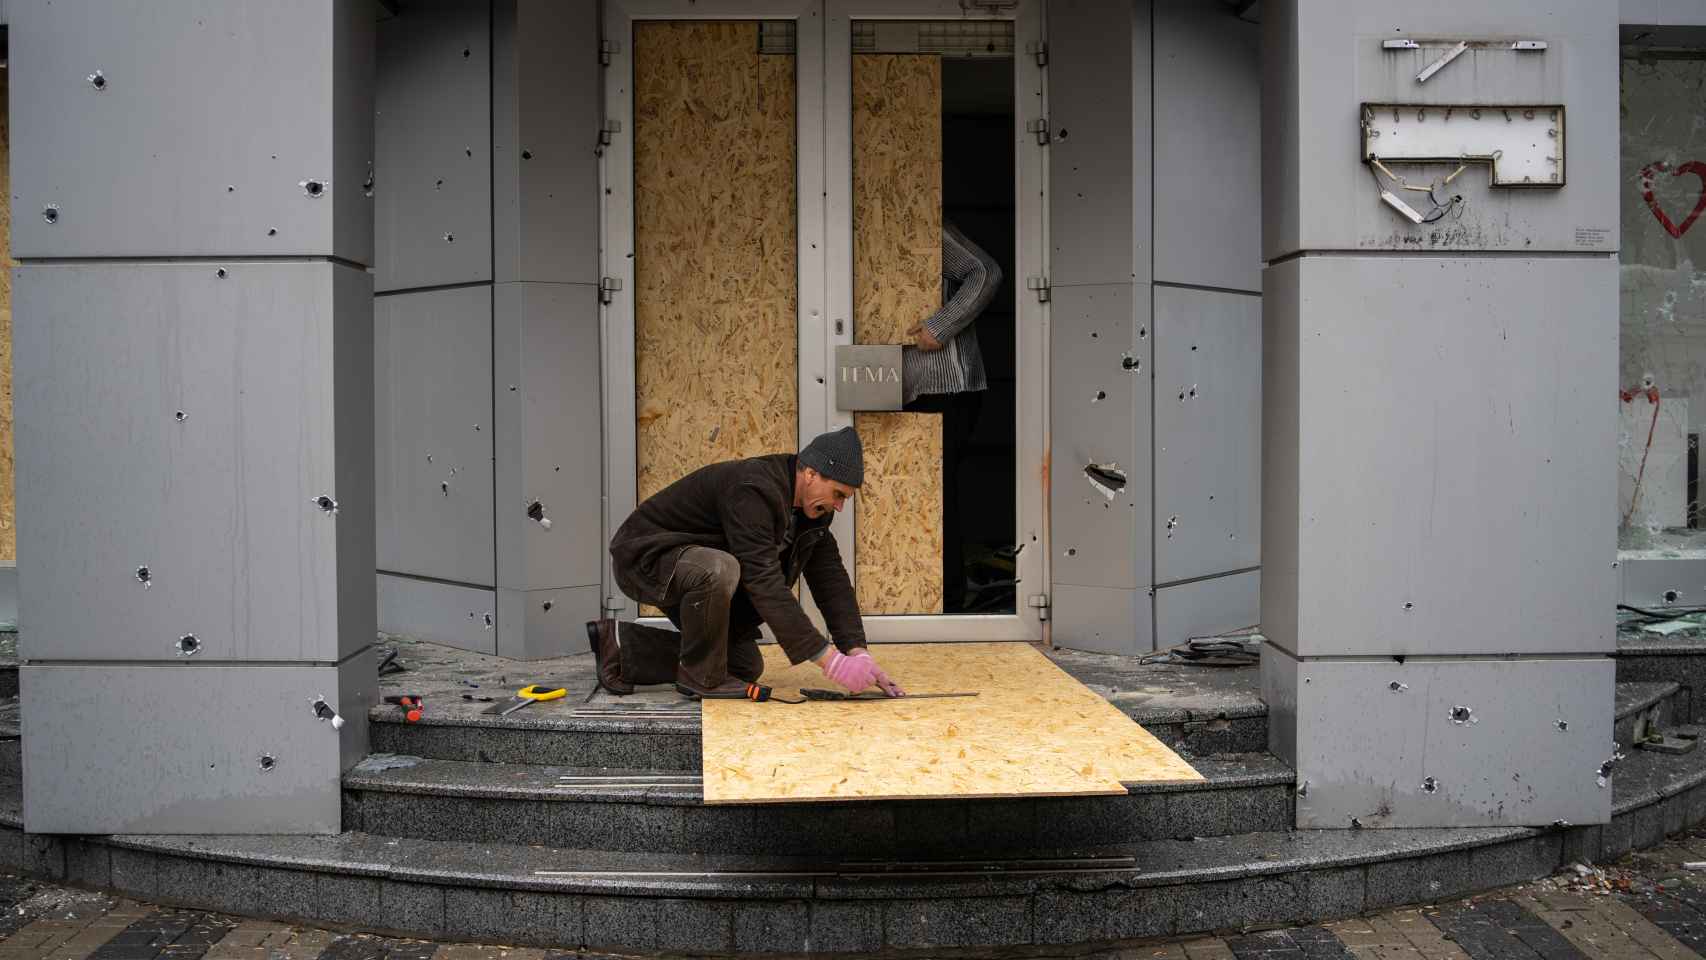 Vladimir mide y recorta la madera para proteger su tienda de ropa. El ataque de hoy ha roto sus cristales y dañado la fachada.